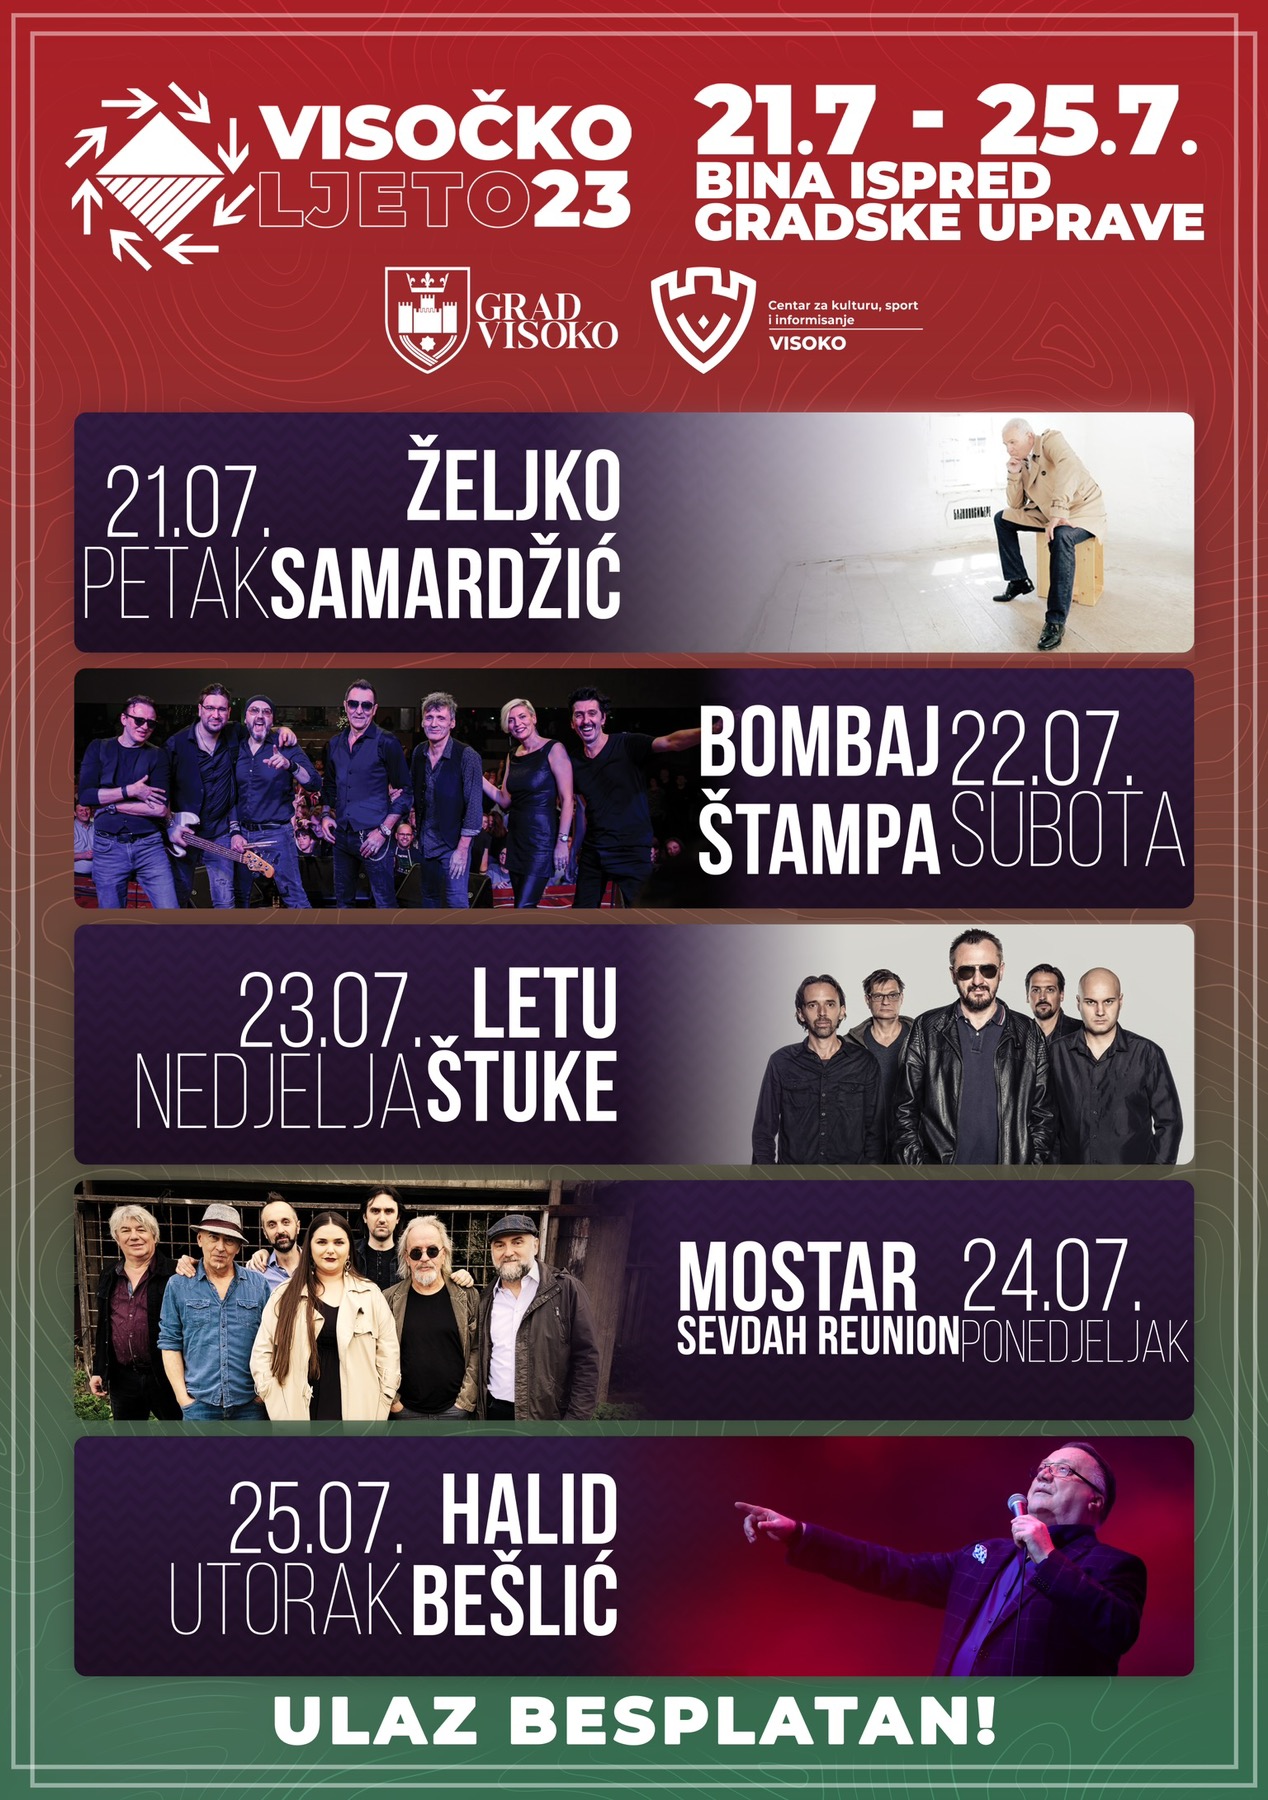 Mirza Ganić: I ove godine najveća muzička imena stižu u Visoko na manifestaciju “Visočko ljeto 2023.”!